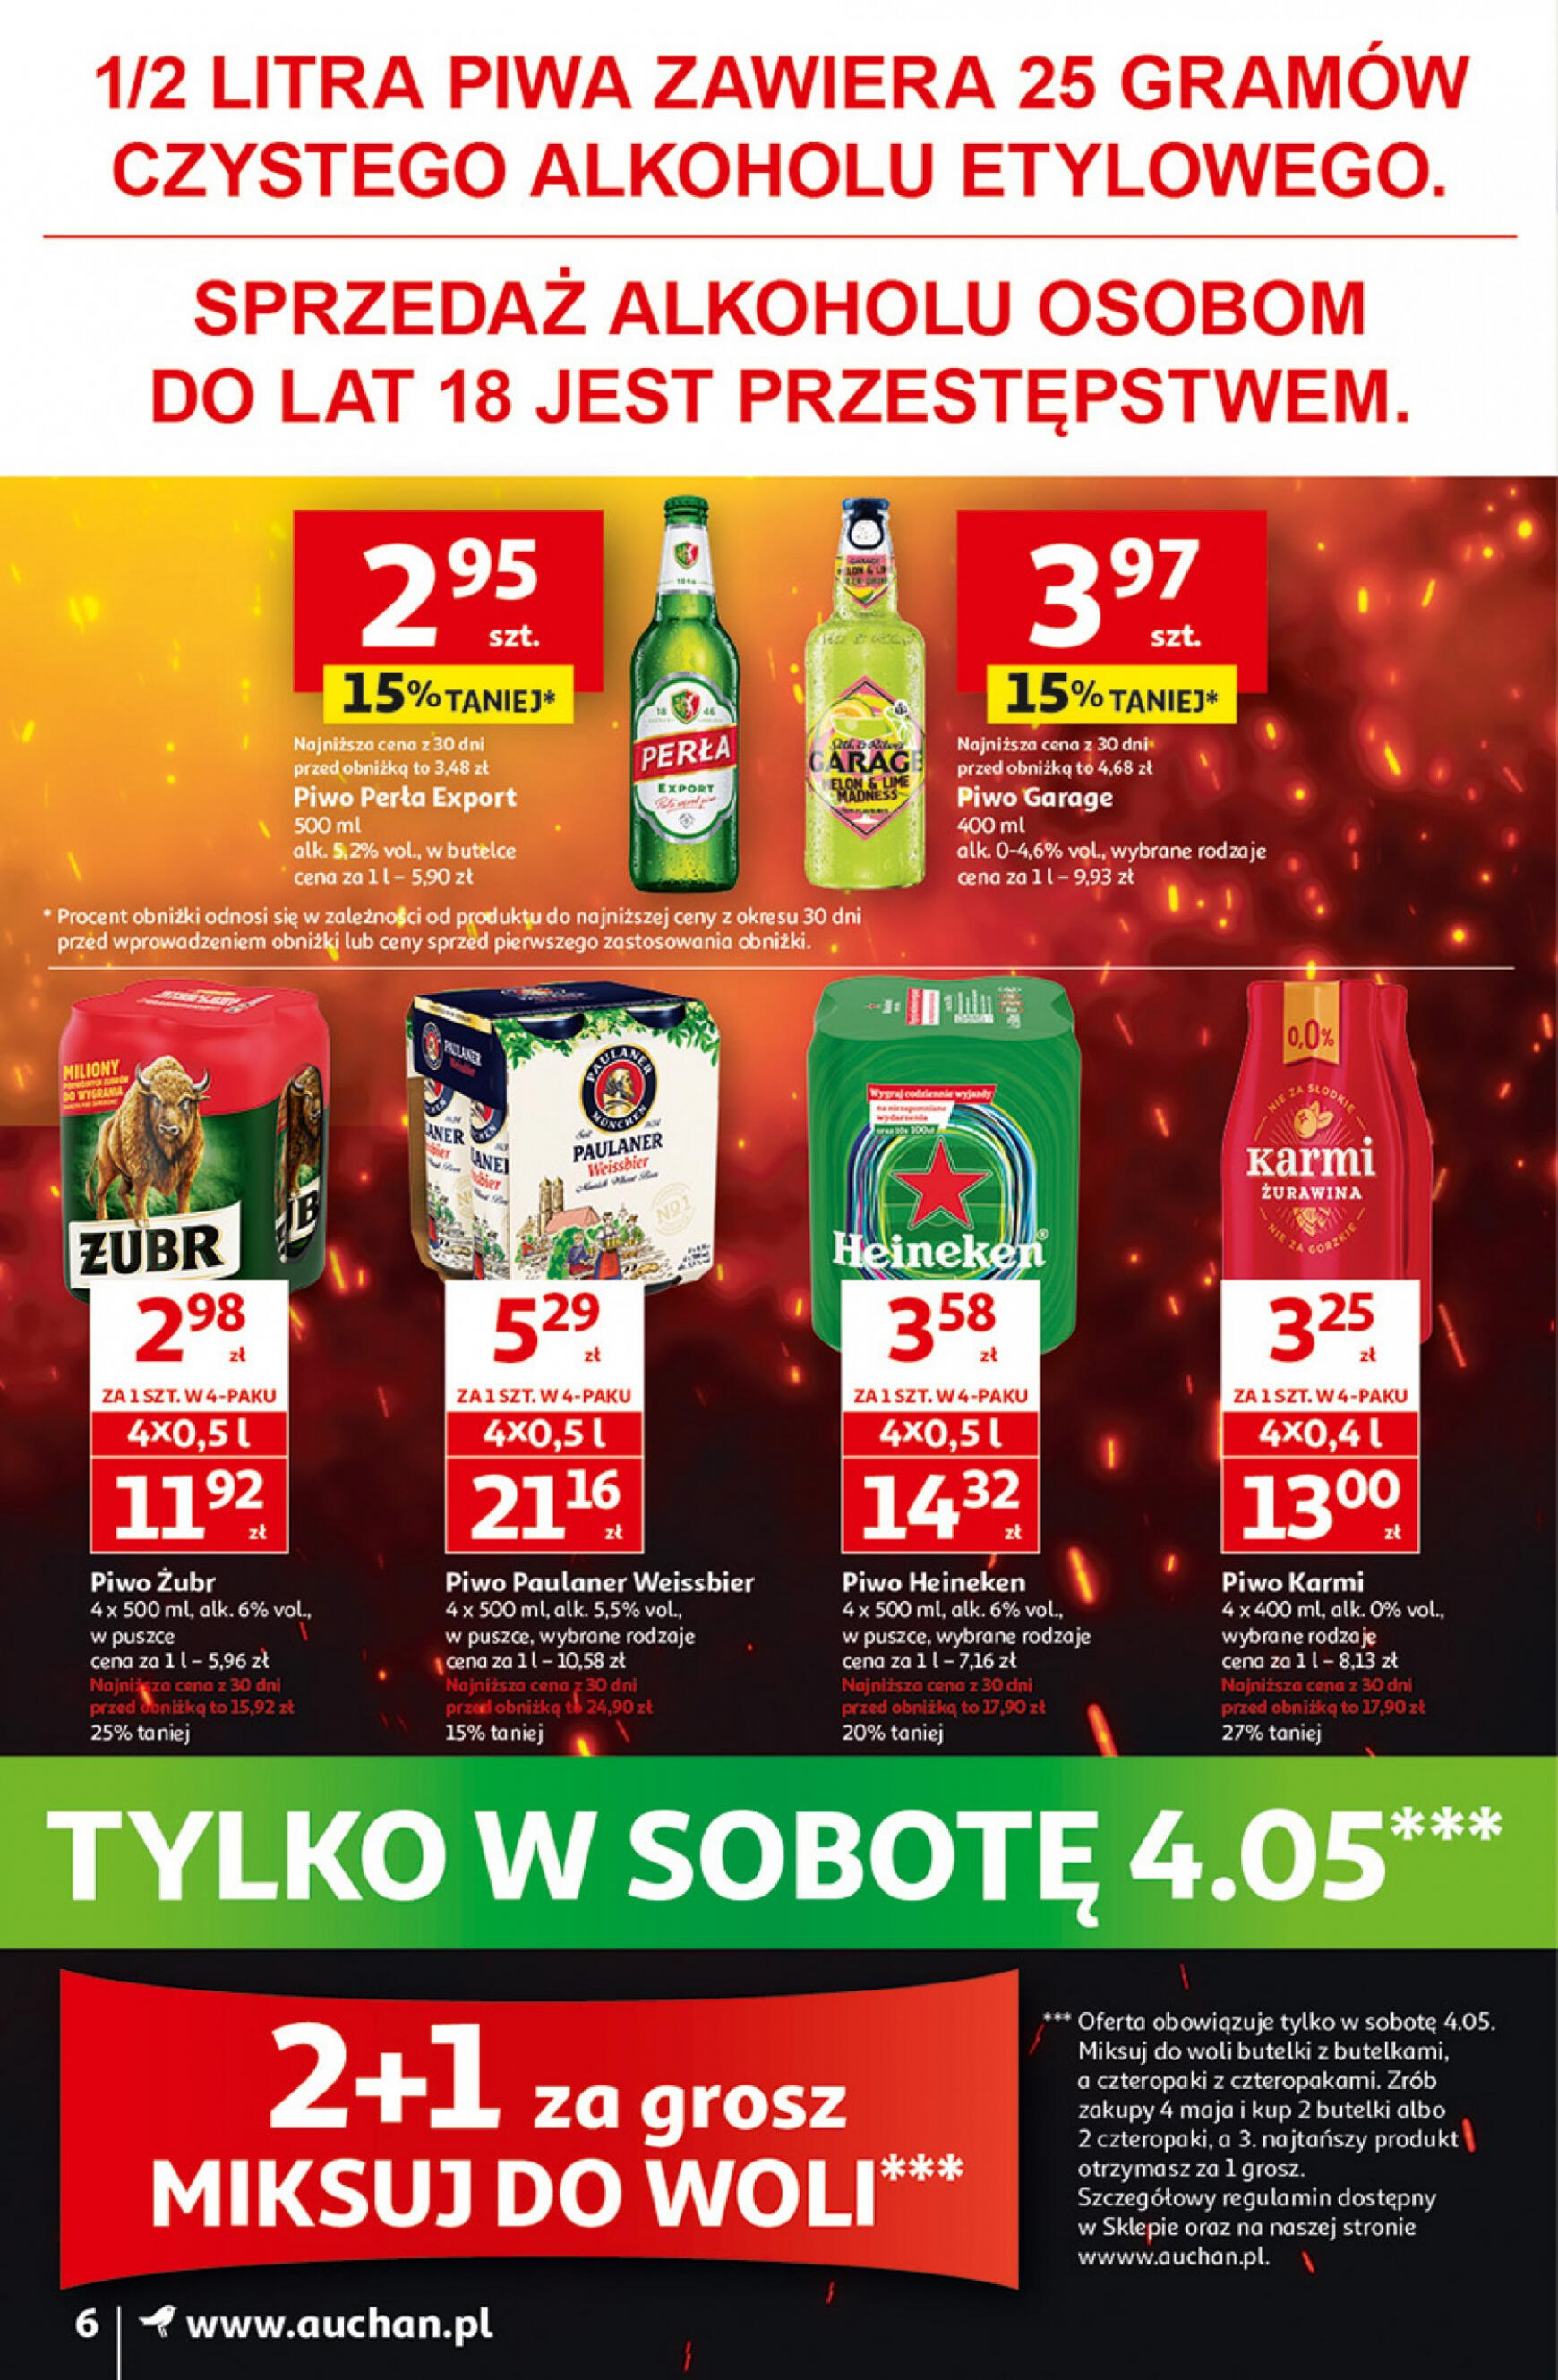 auchan - Moje Auchan - Gazetka Jeszcze taniej na urodziny gazetka aktualna ważna od 02.05. - 08.05. - page: 6